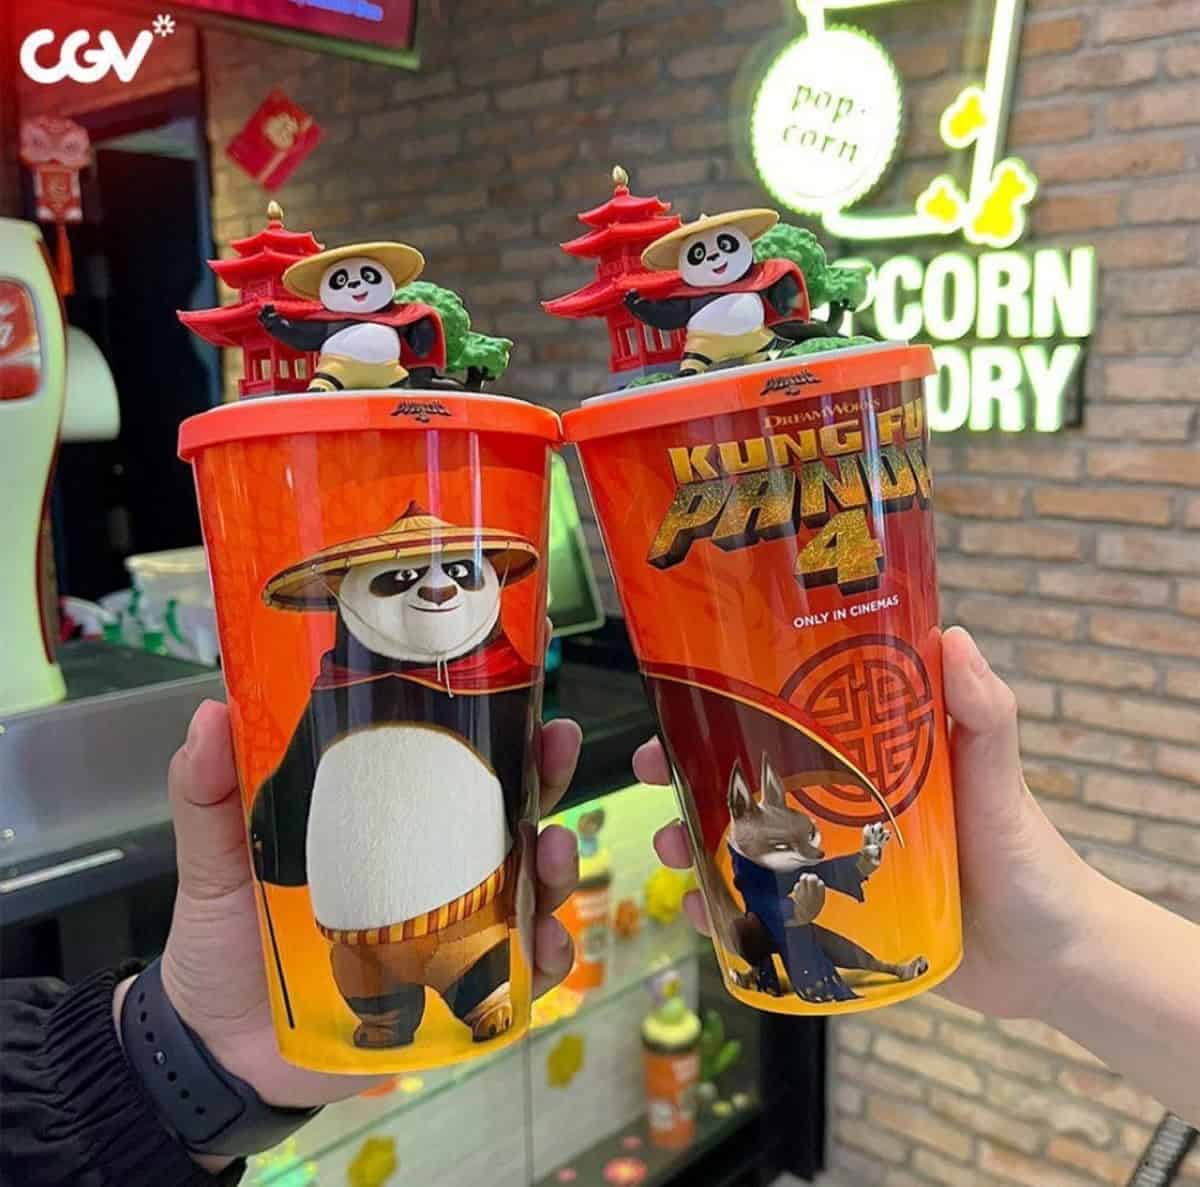 Vasos de Kun Fu Panda 4 que se vendieron en Malasia